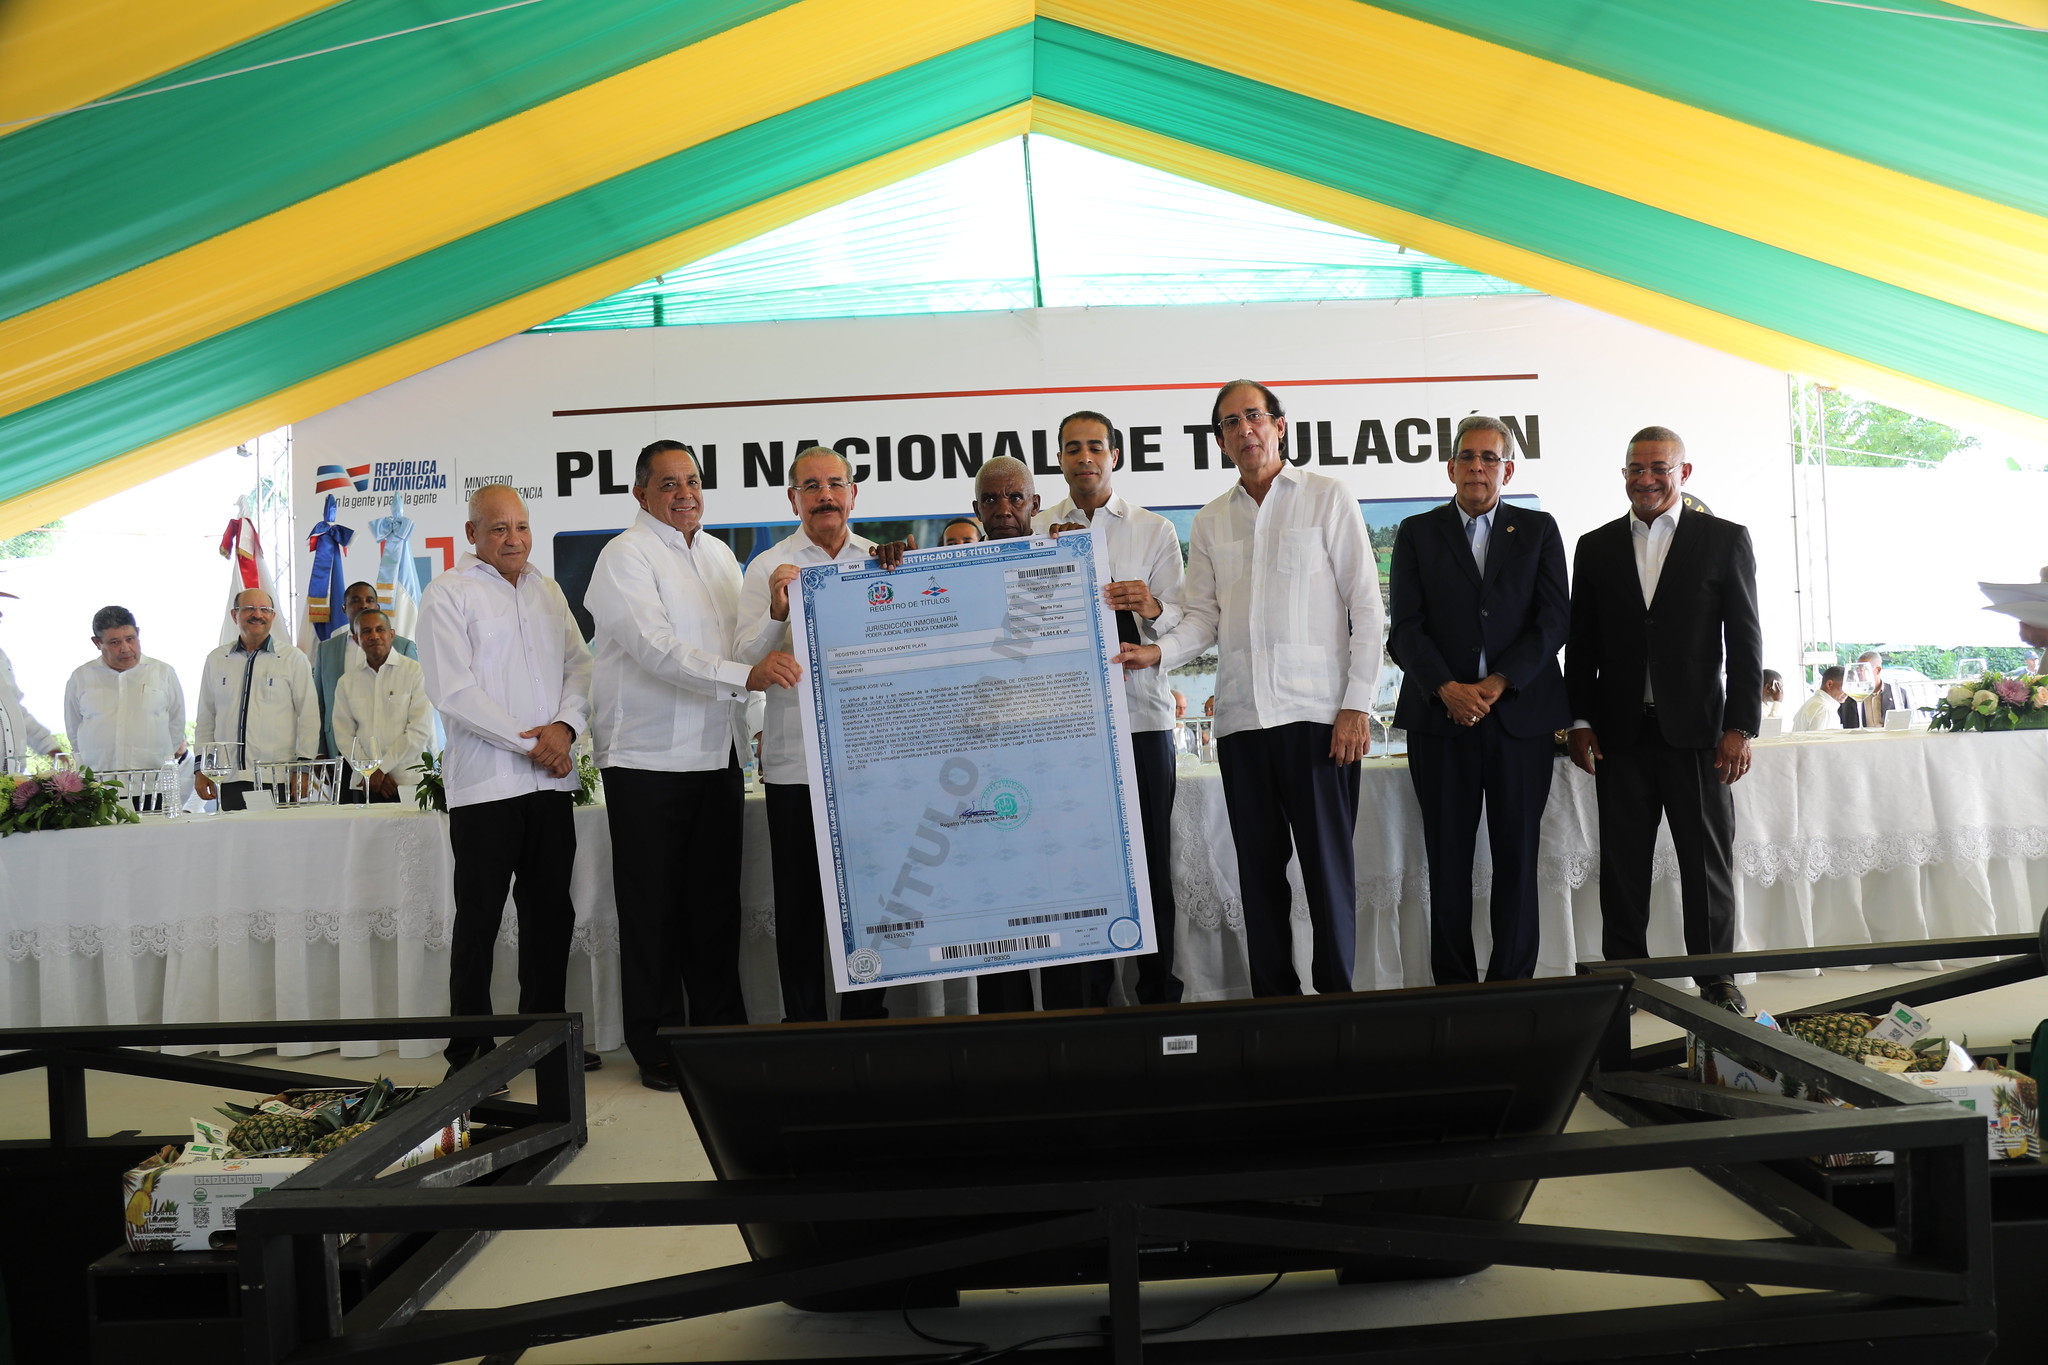 REPÚBLICA DOMINICANA: Democratización de la propiedad: presidente Danilo Medina entrega certificado de título número 60,000